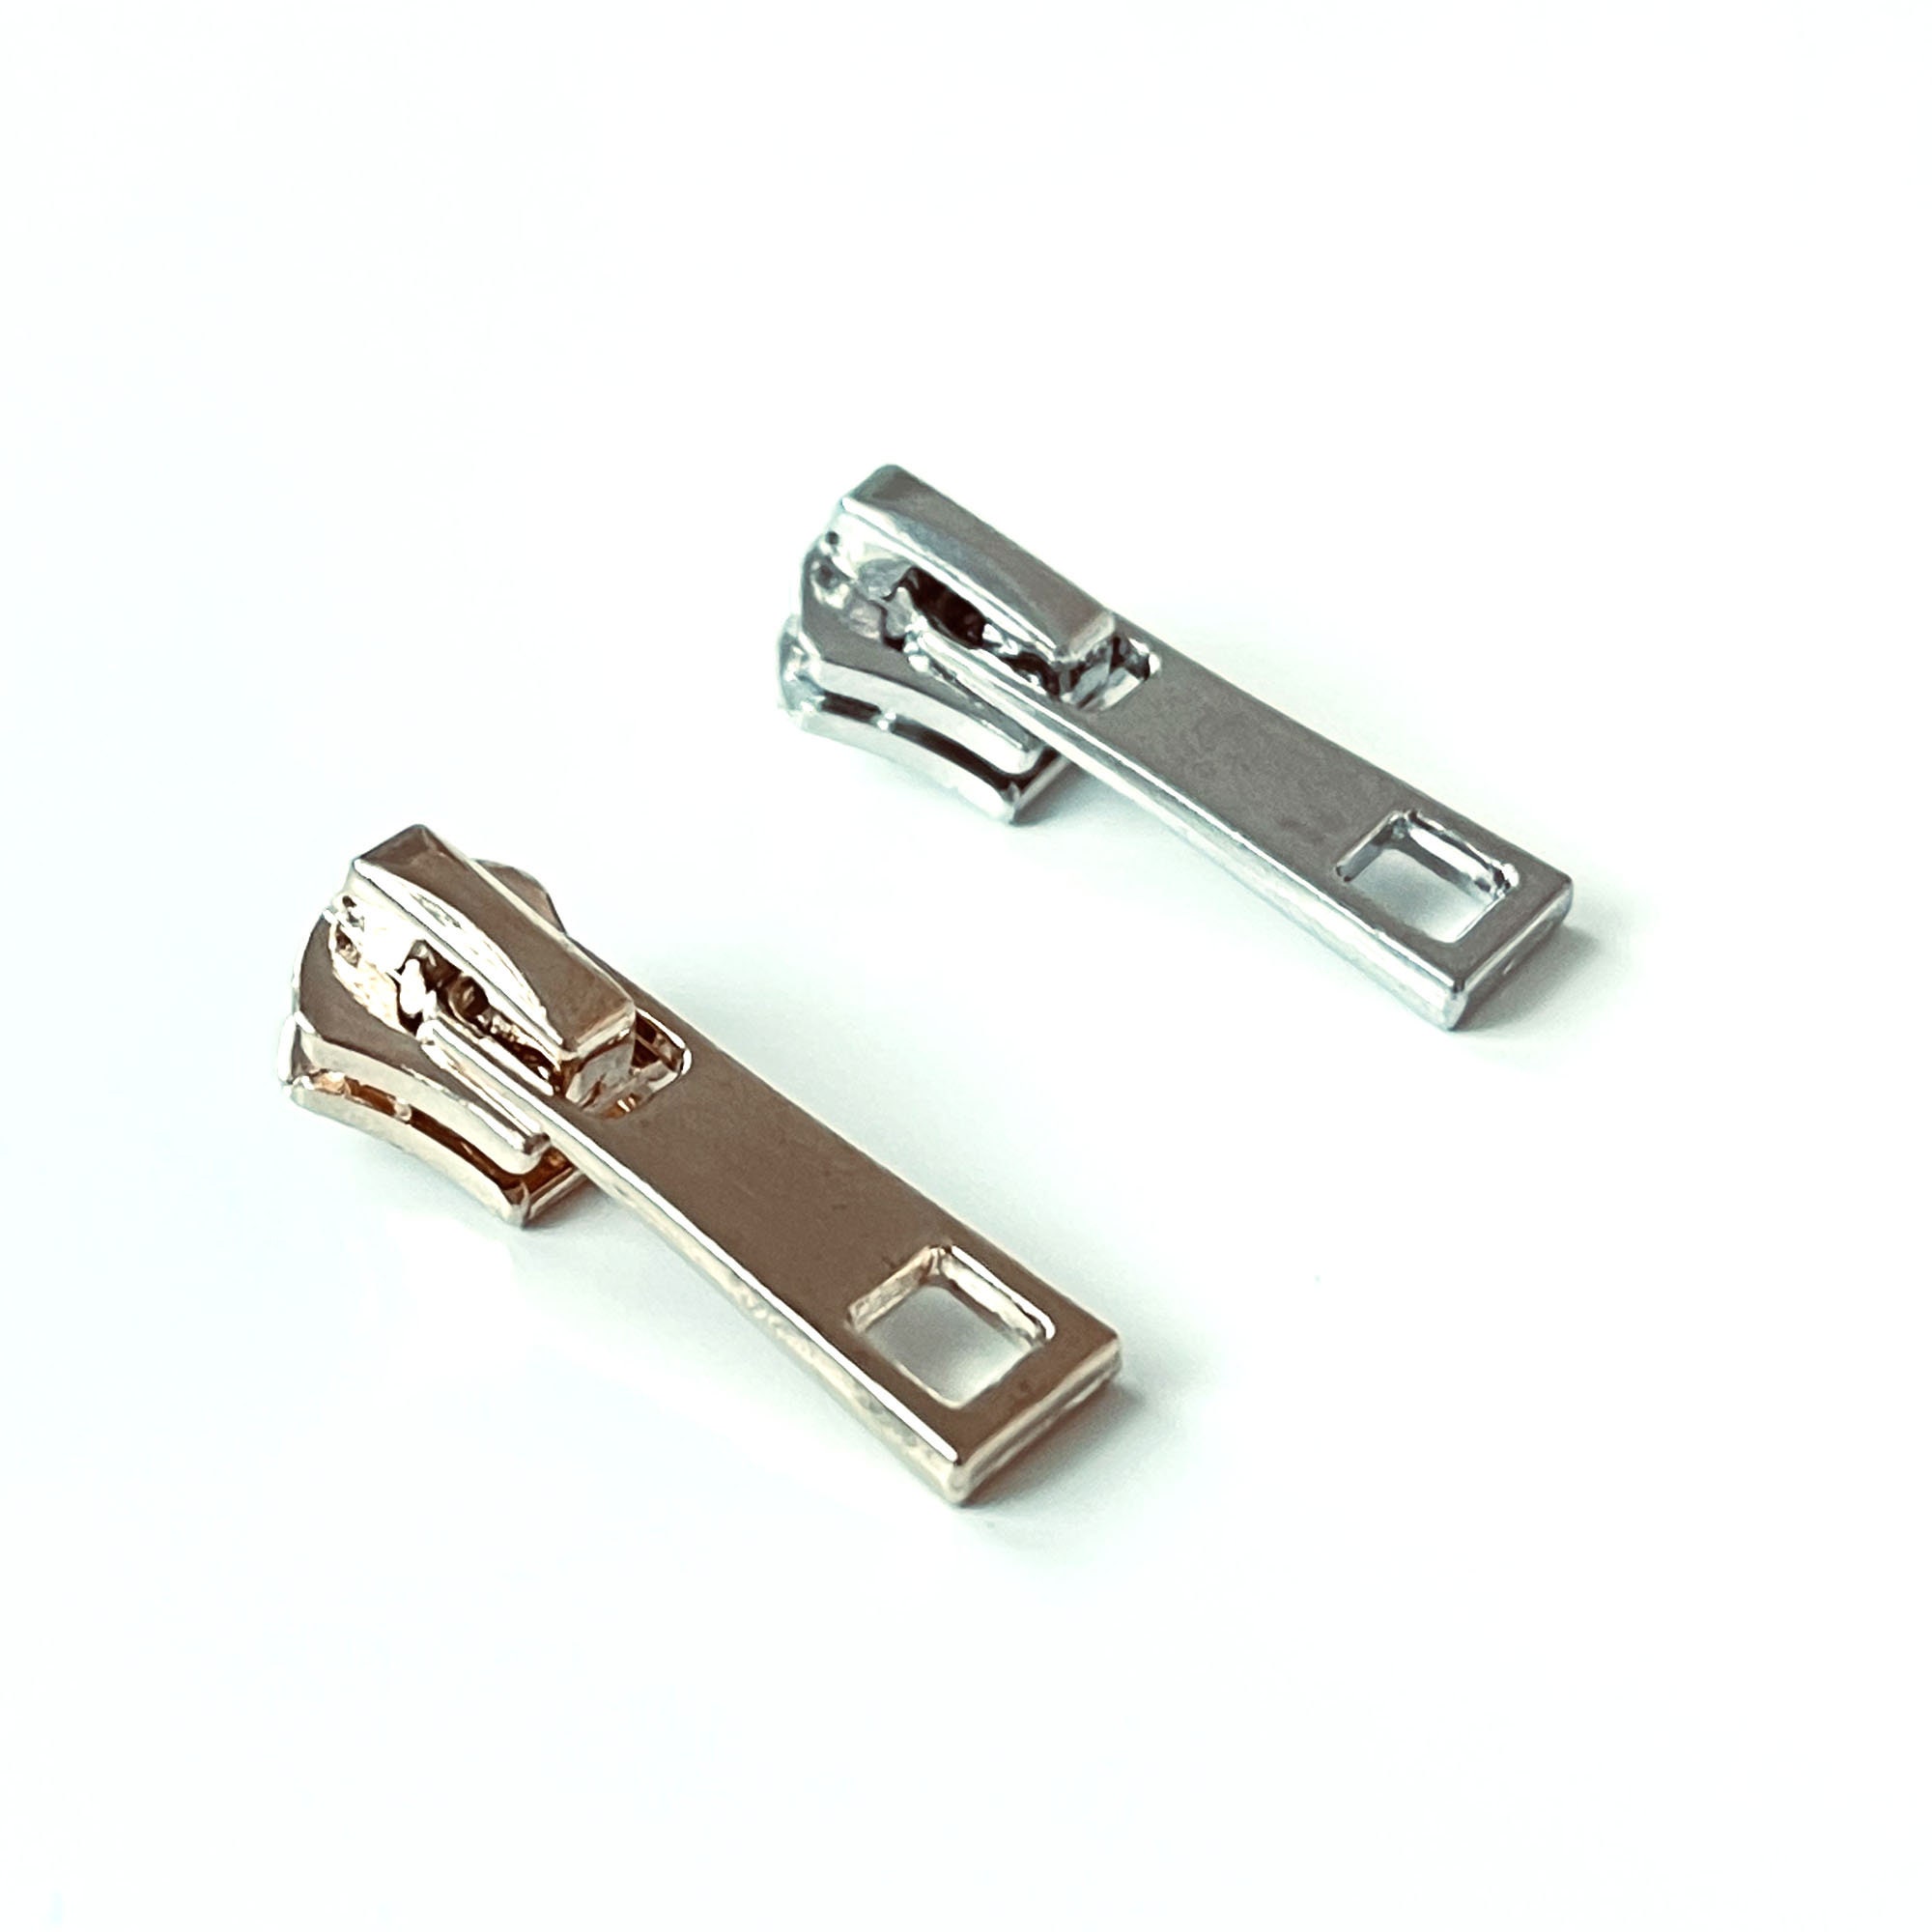 Metal Zipper, 12cm (4.75), Ball Drop Zipper Pull